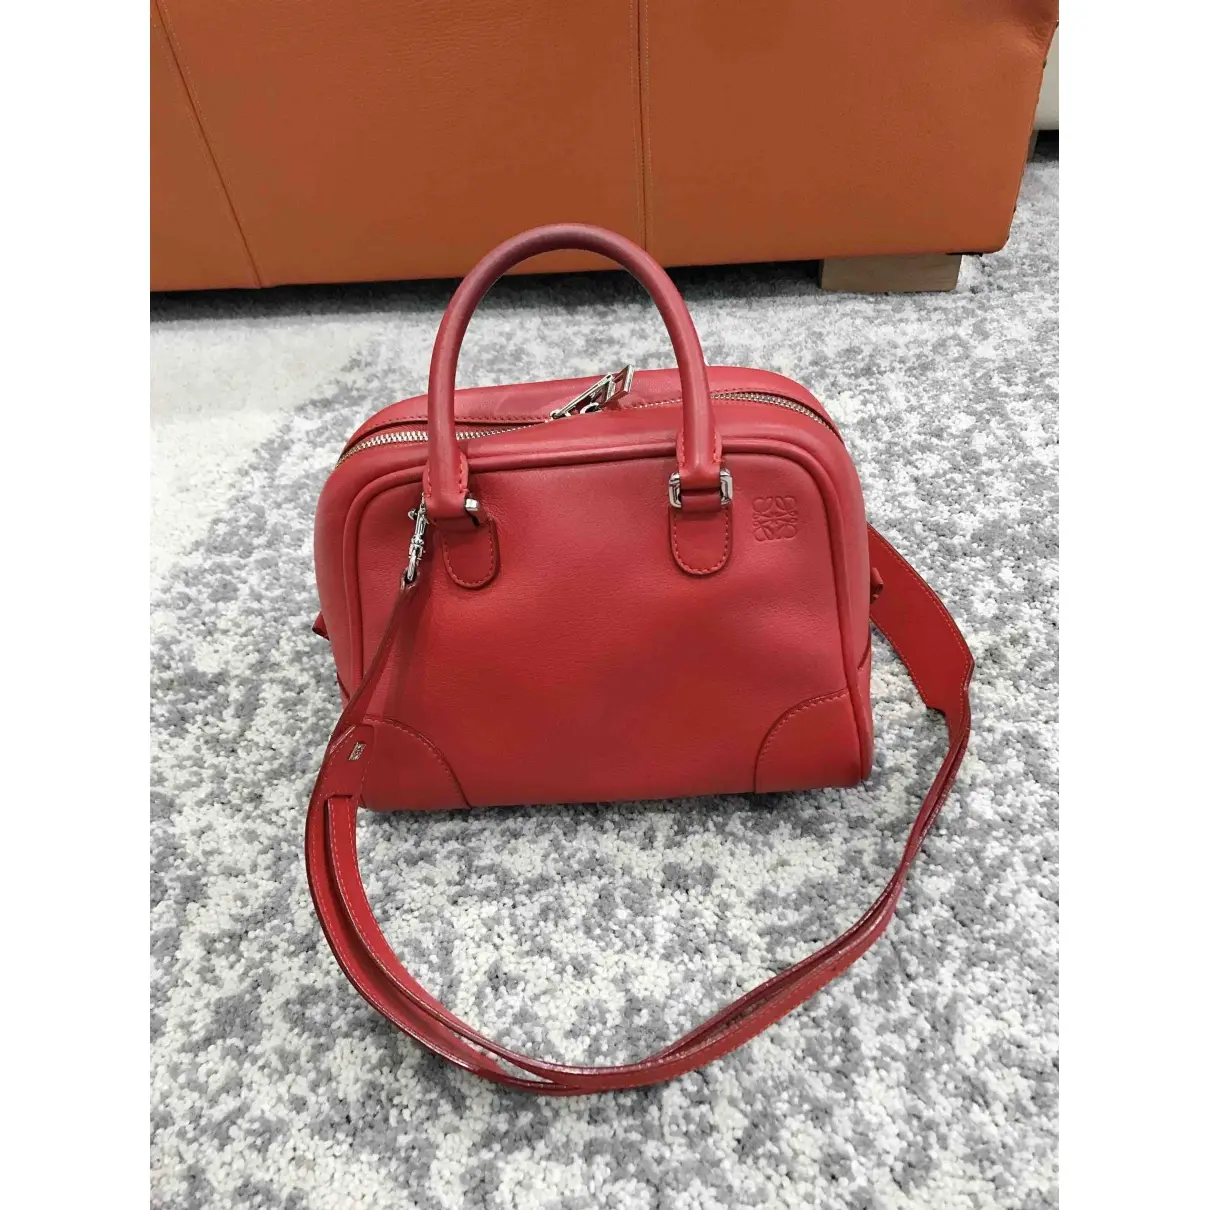 Buy Loewe Amazona 75  leather handbag online